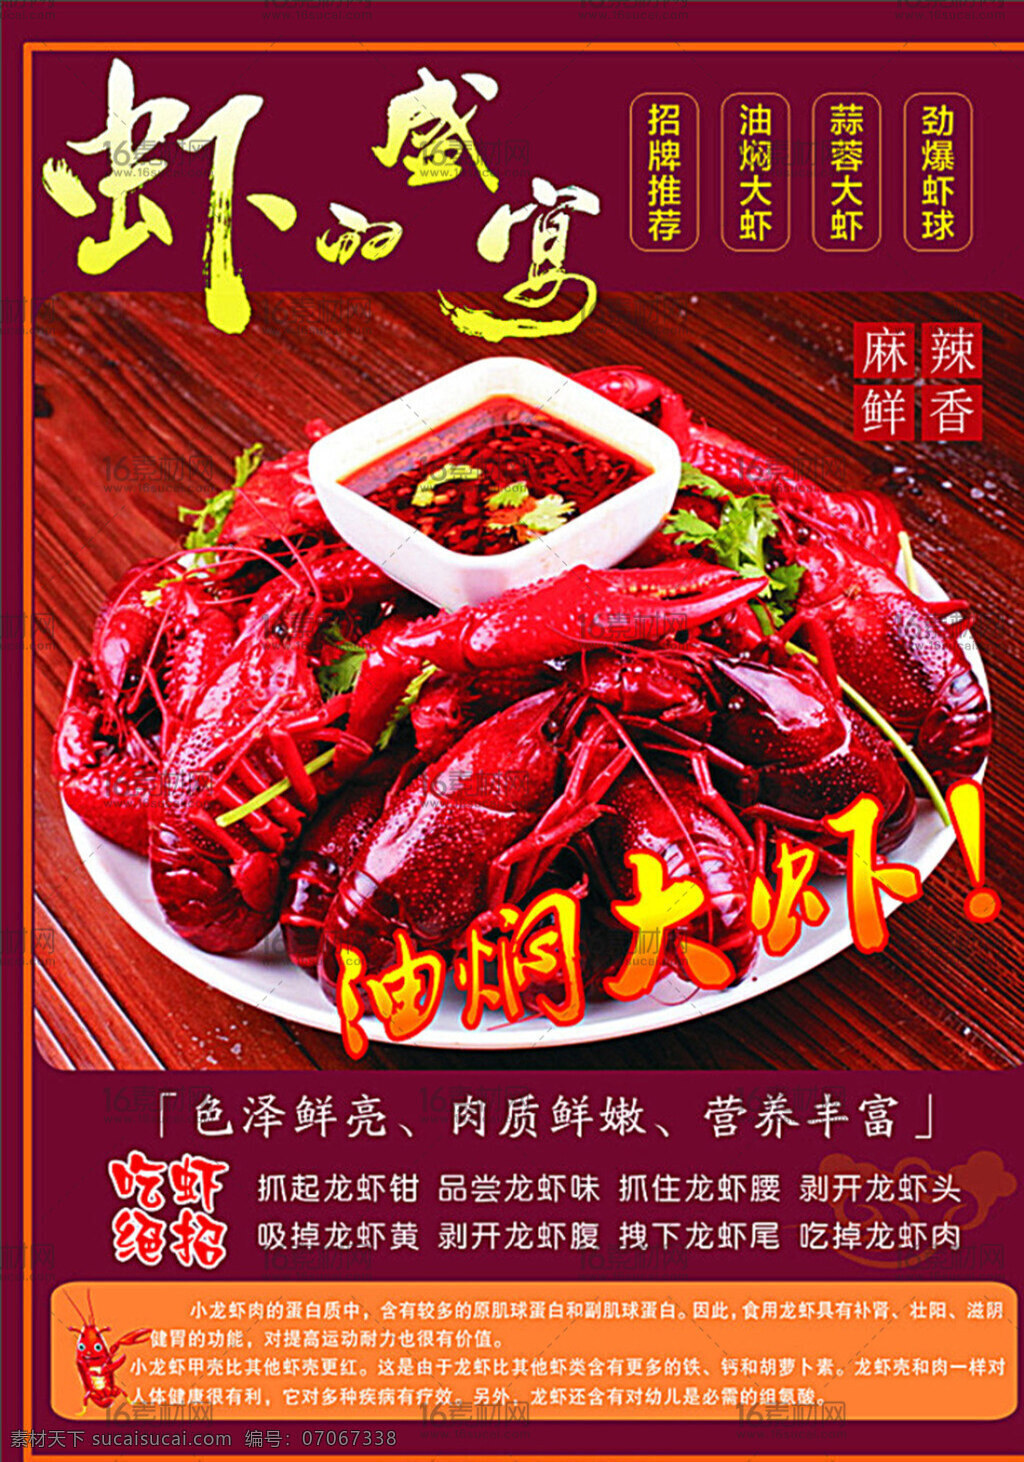 美食海报 美食广告 美食宣传 龙虾 虾的盛宴 麻辣 鲜香 油焖大虾 红色